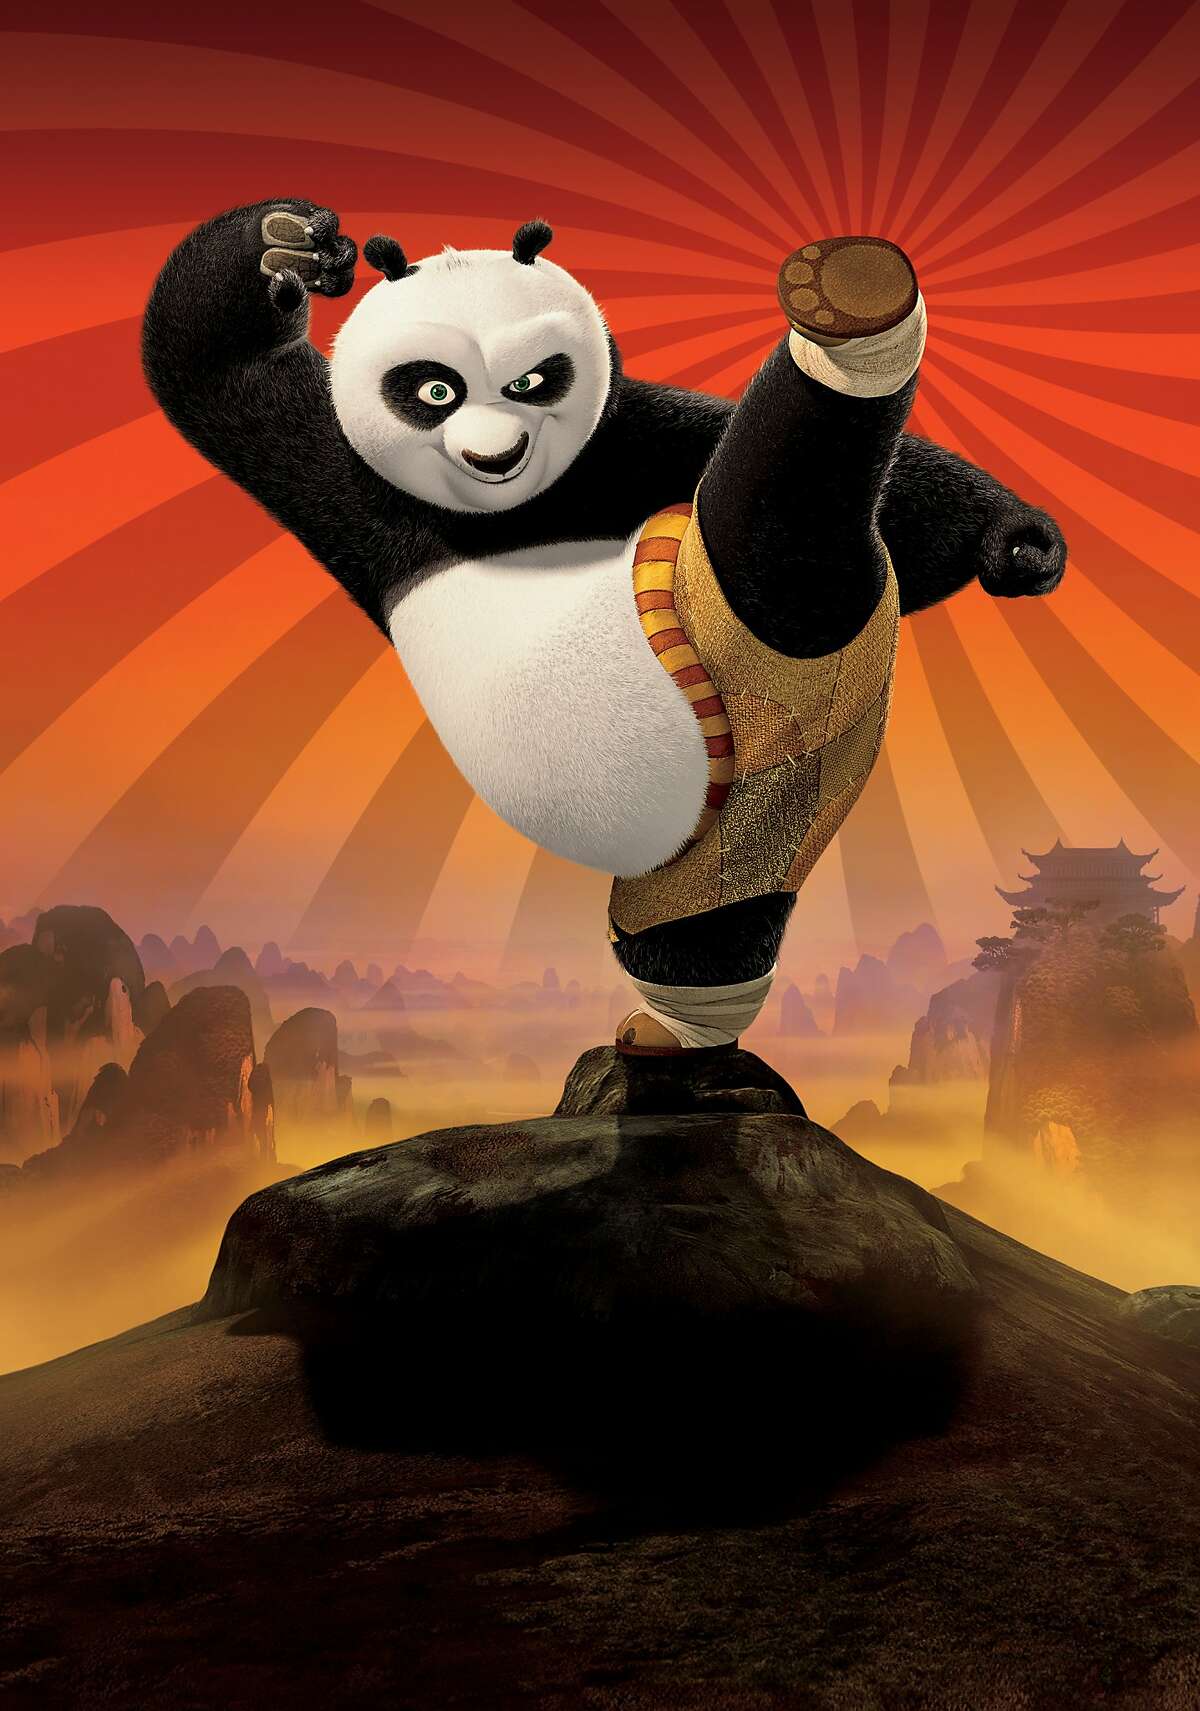 Kung Fu Panda (2008) | Kung Fu Panda 2 (2011) Available on Netflix July 1